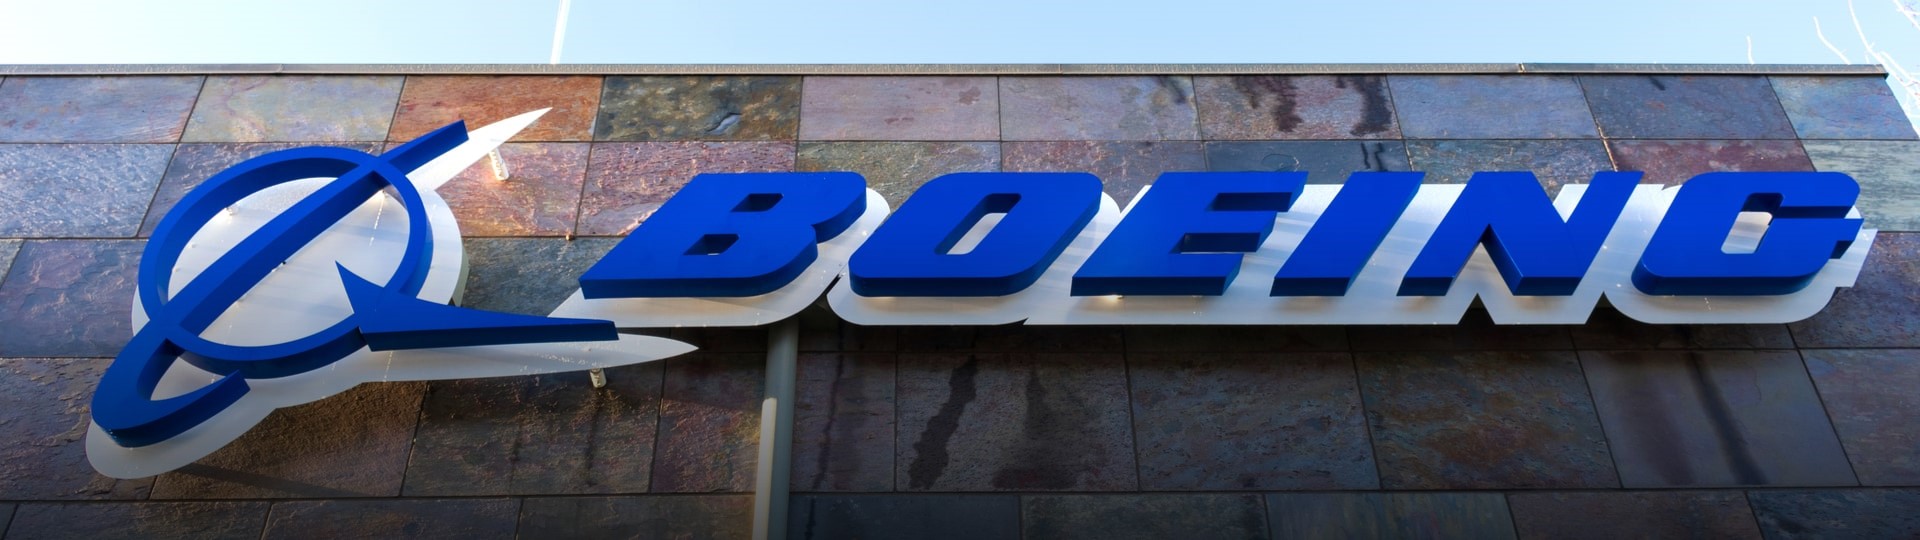 Výrobce letadel Boeing vykázal první čtvrtletní zisk od roku 2019